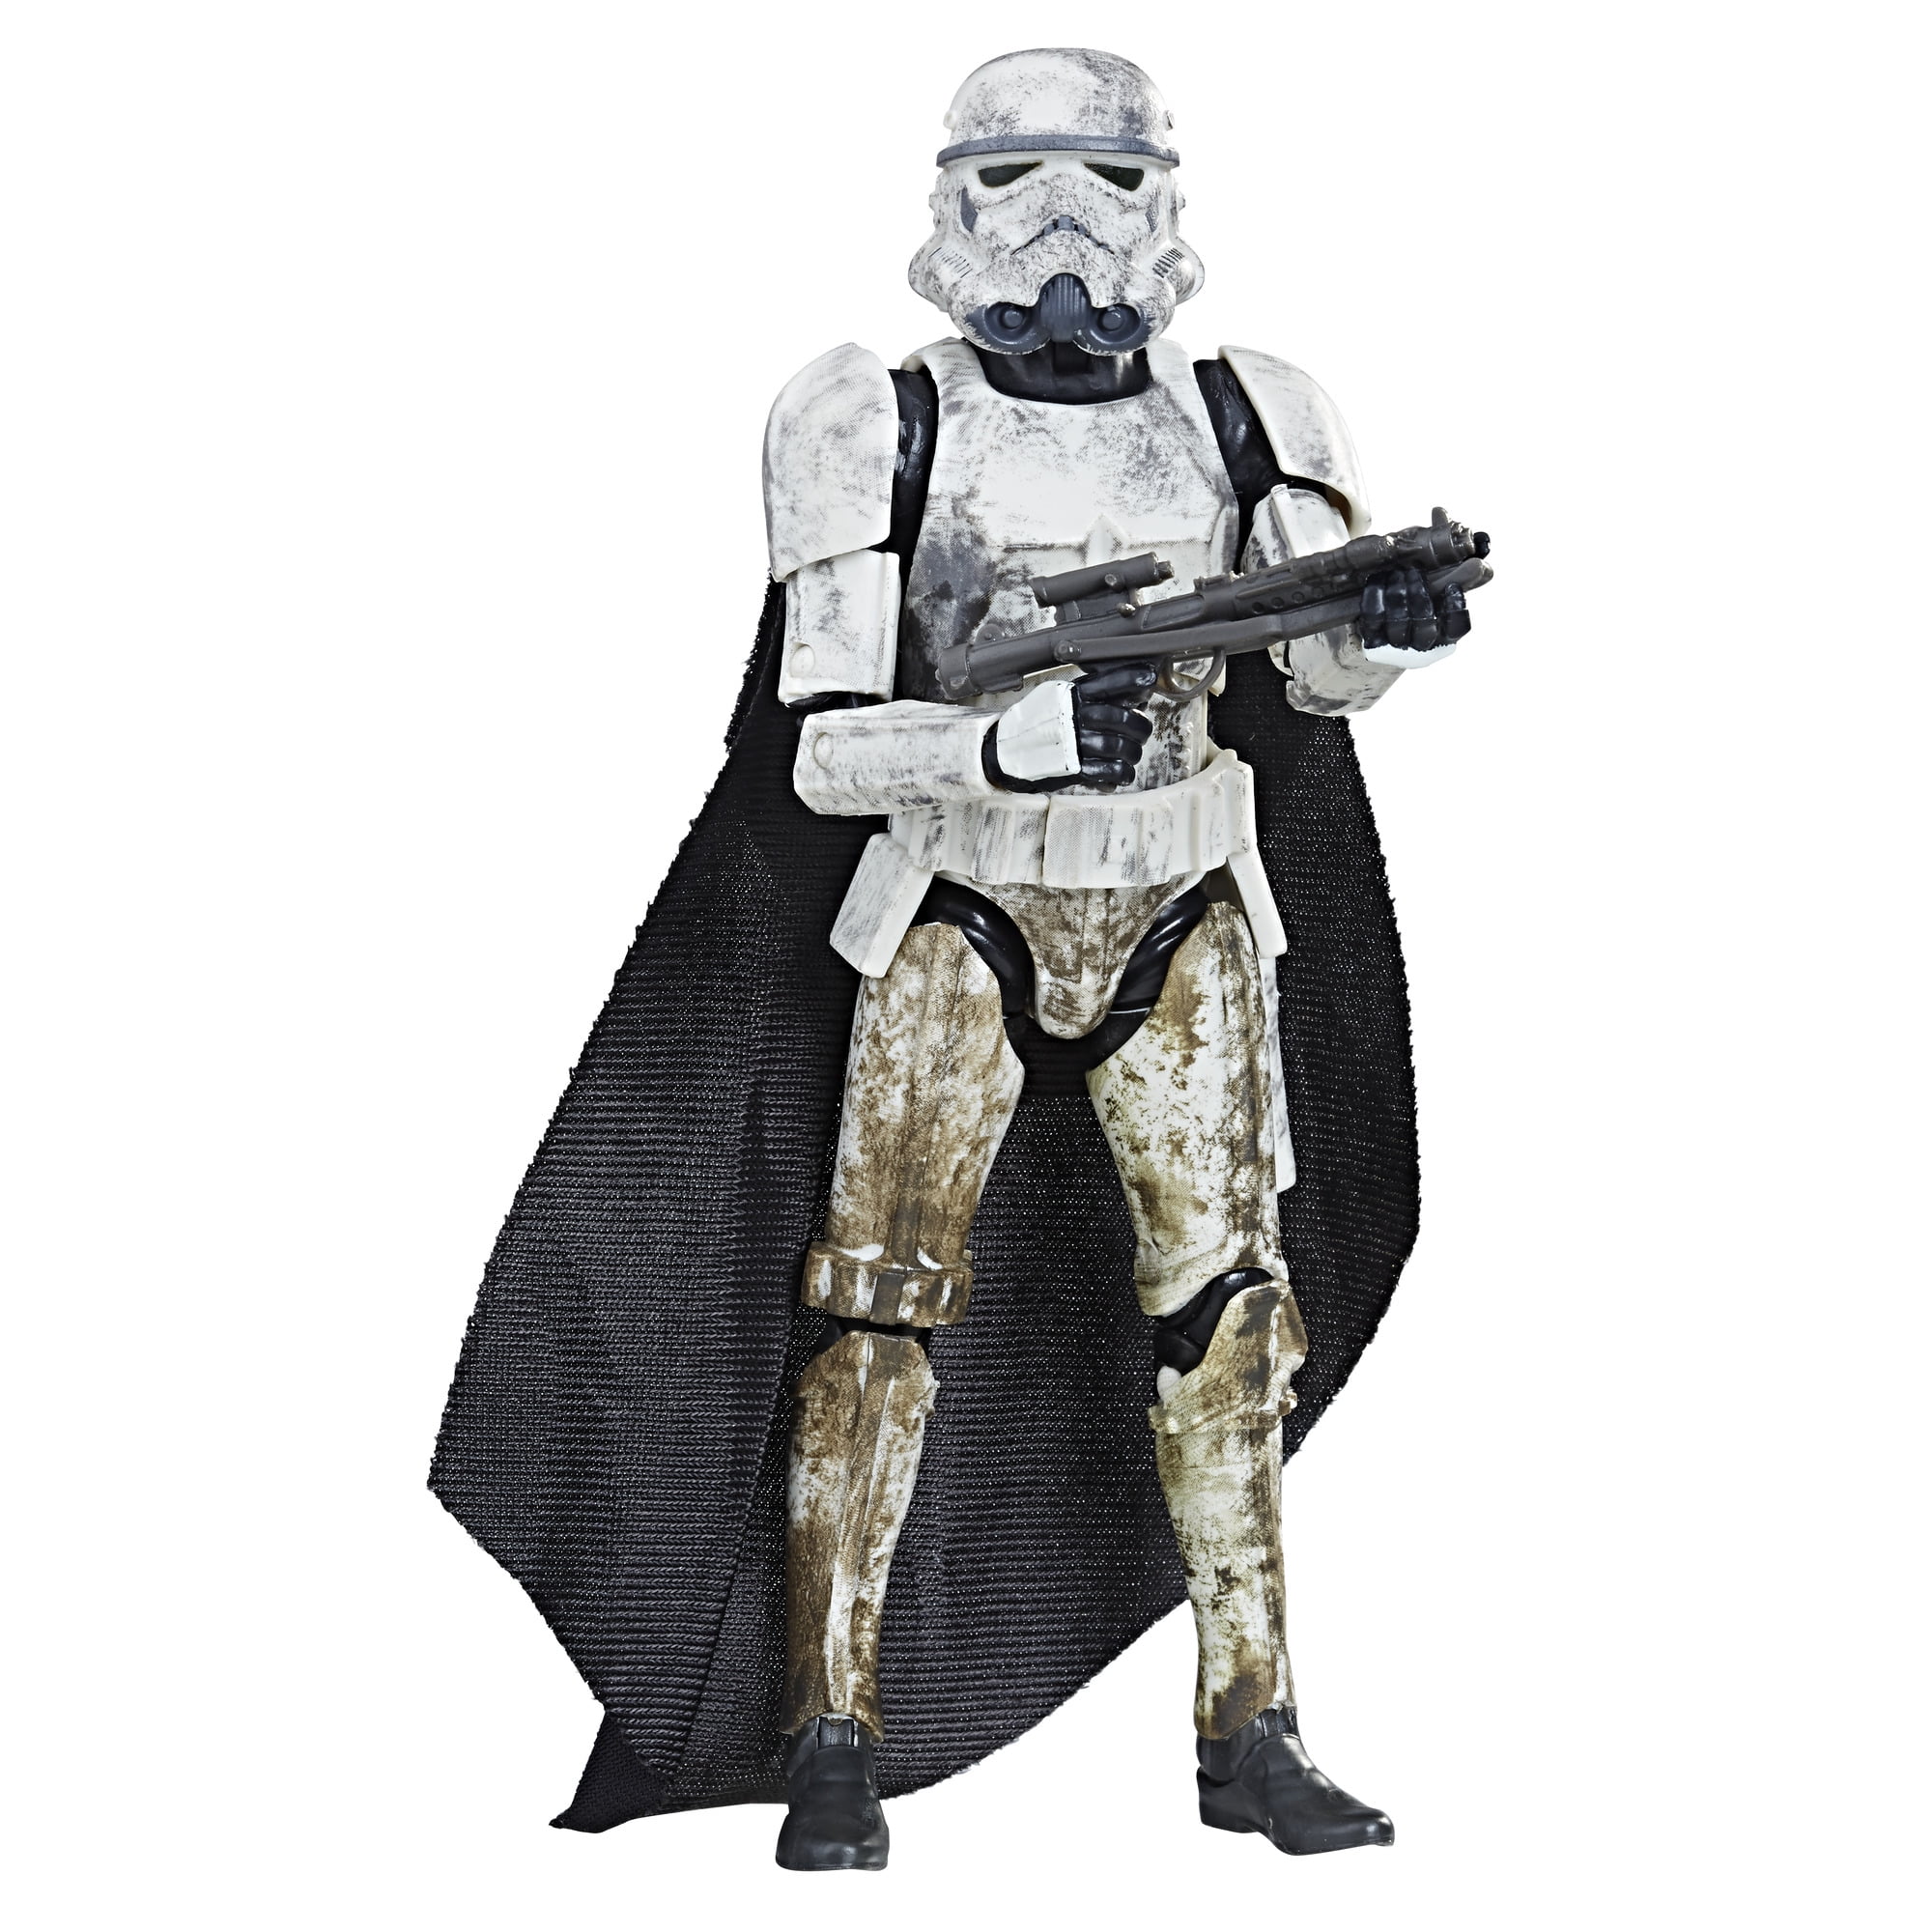 Star Wars Hasbro Black Series 6" Inch Mimban Stormtrooper Action Figure NEW 